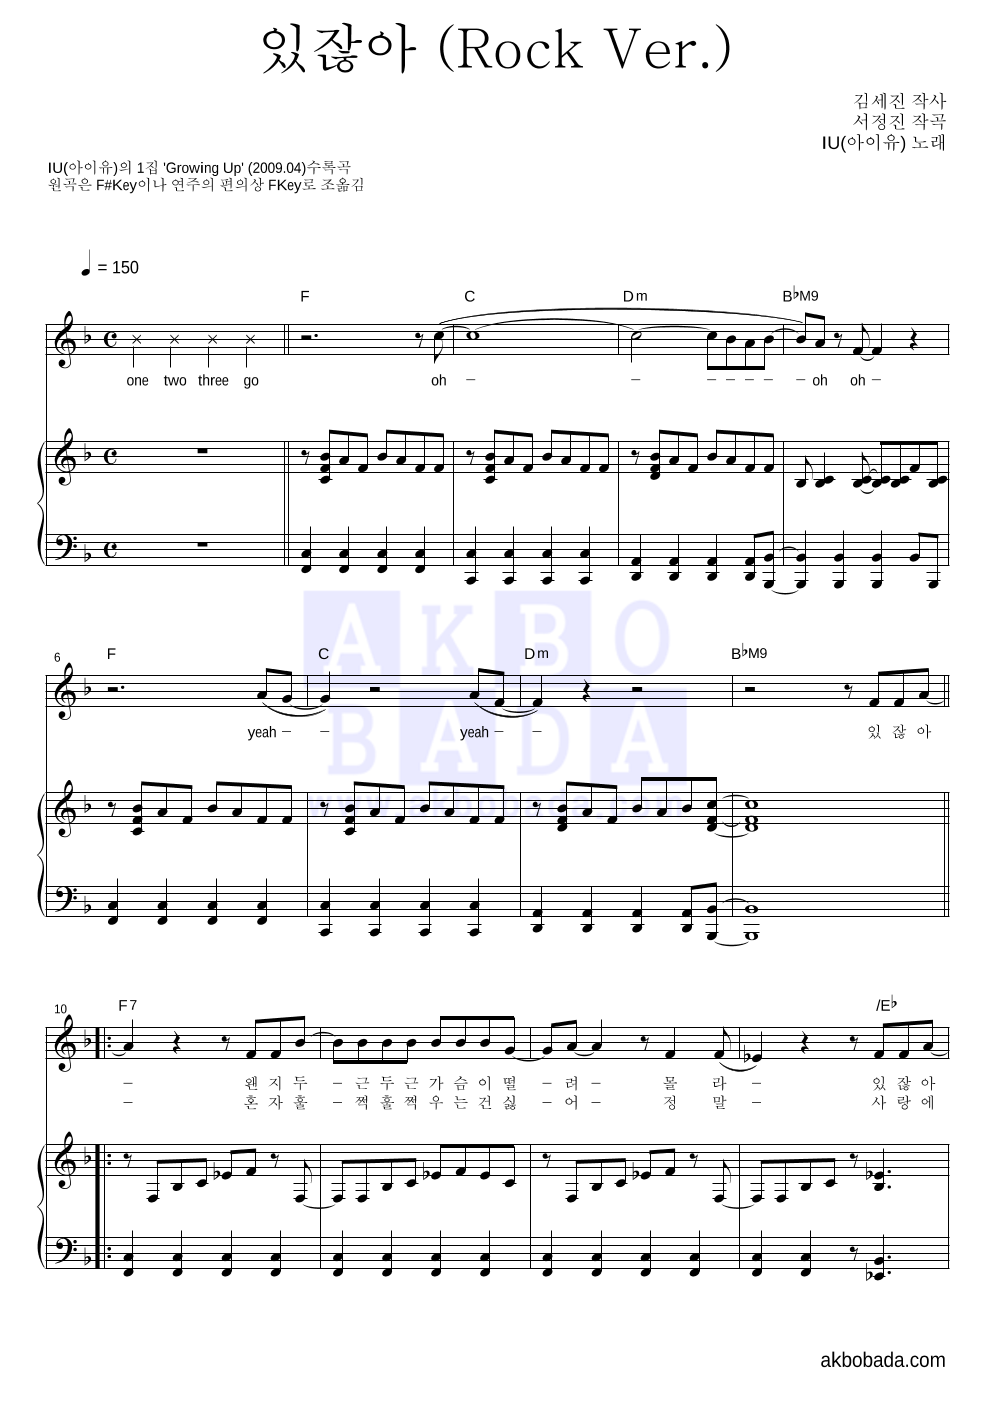 아이유 - 있잖아 (Rock Ver.) 피아노 3단 악보 